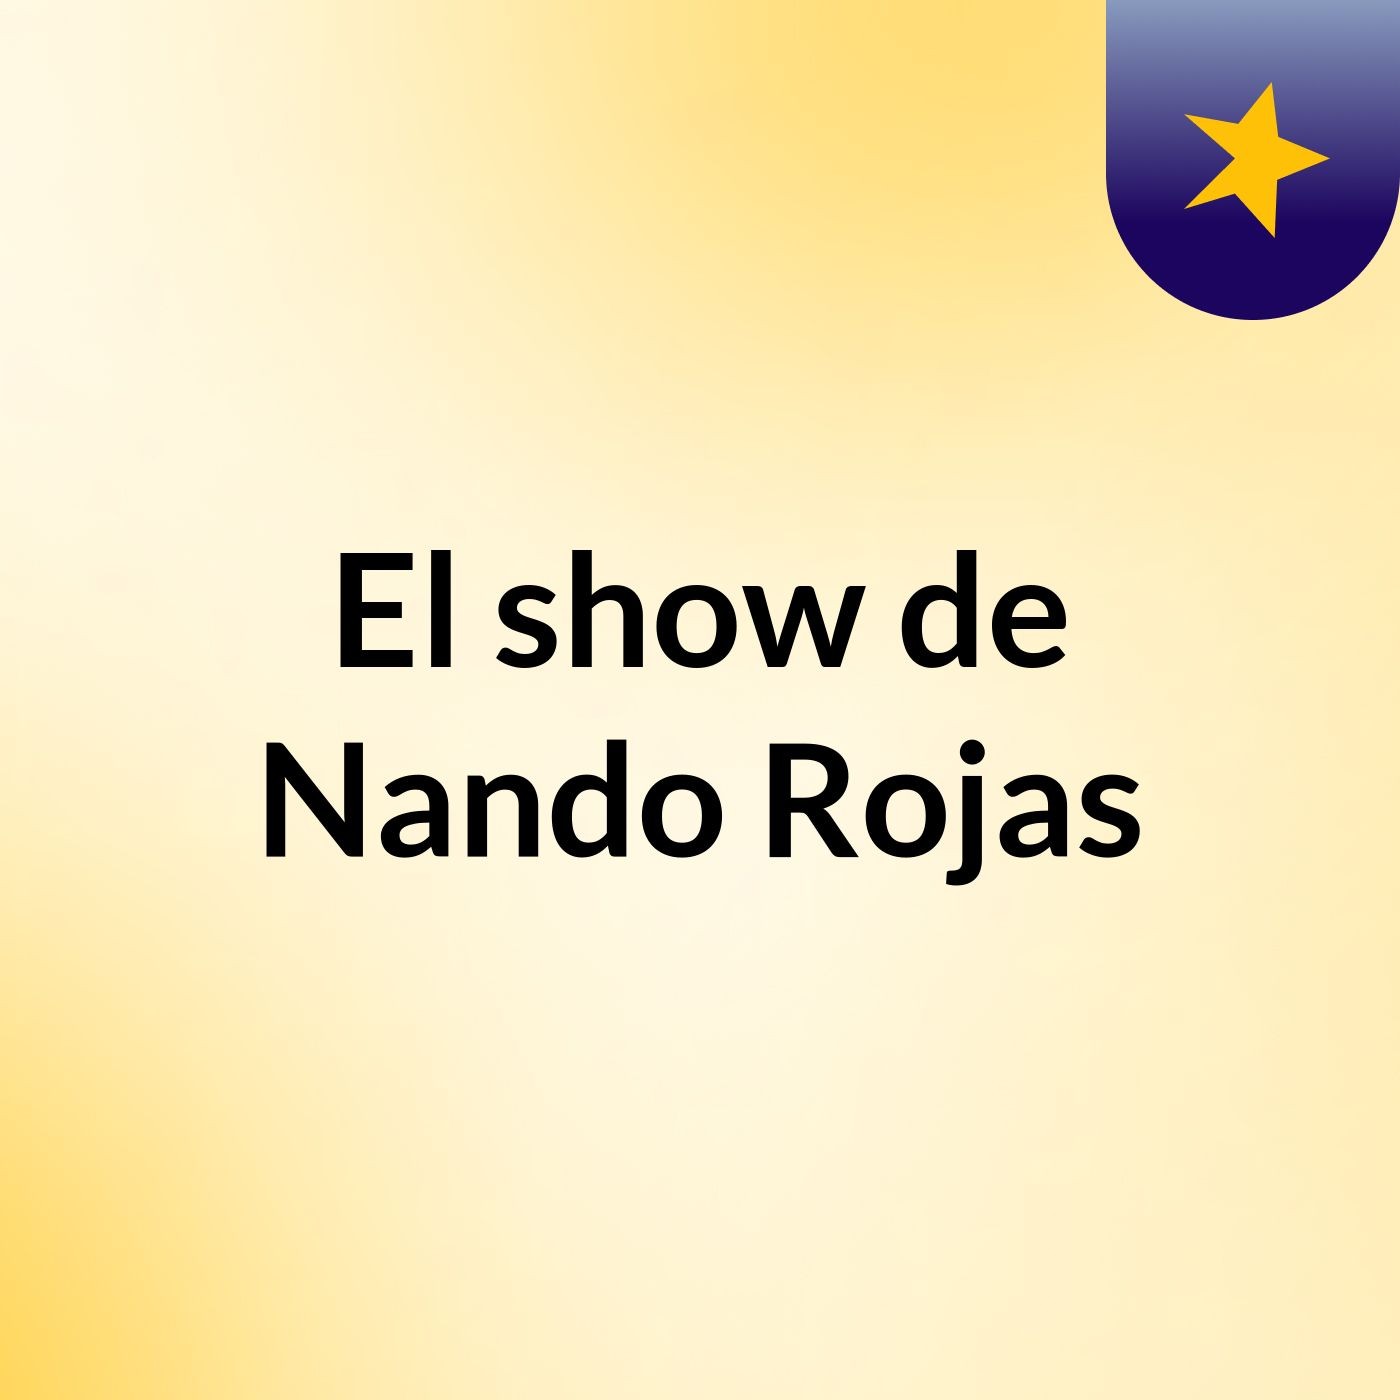 El show de Nando Rojas